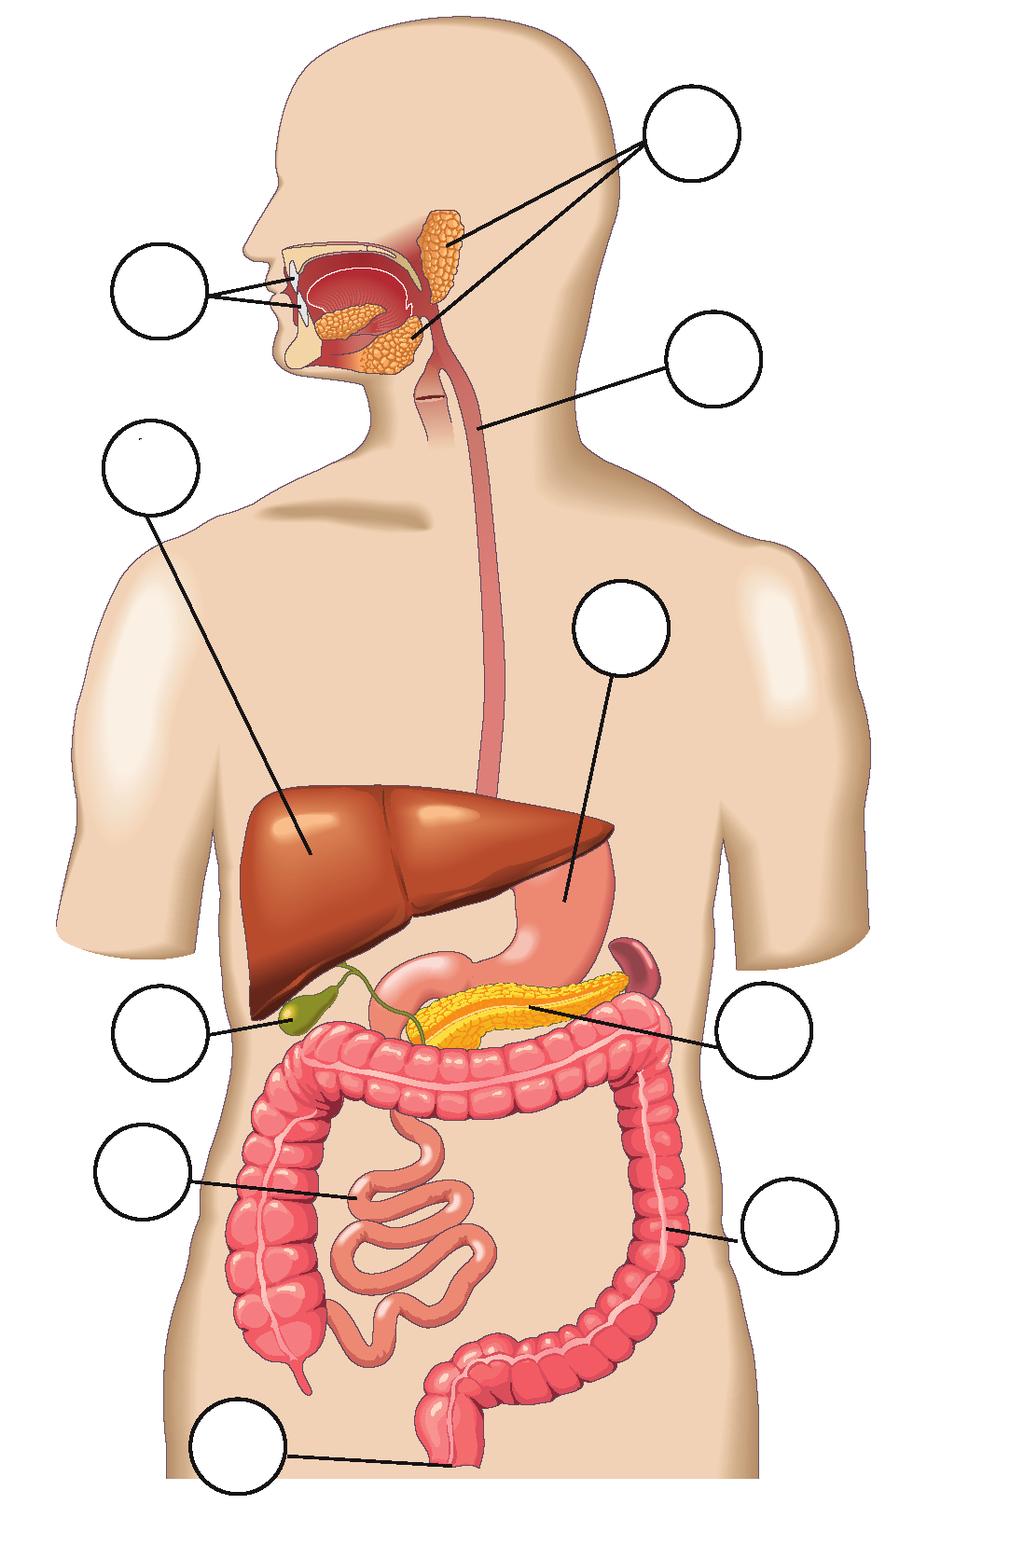 utilizadas por las células del cuerpo. 1. Escribe el nombre de cada una de las partes de este dibujo del sistema digestivo humano e indica sus funciones.